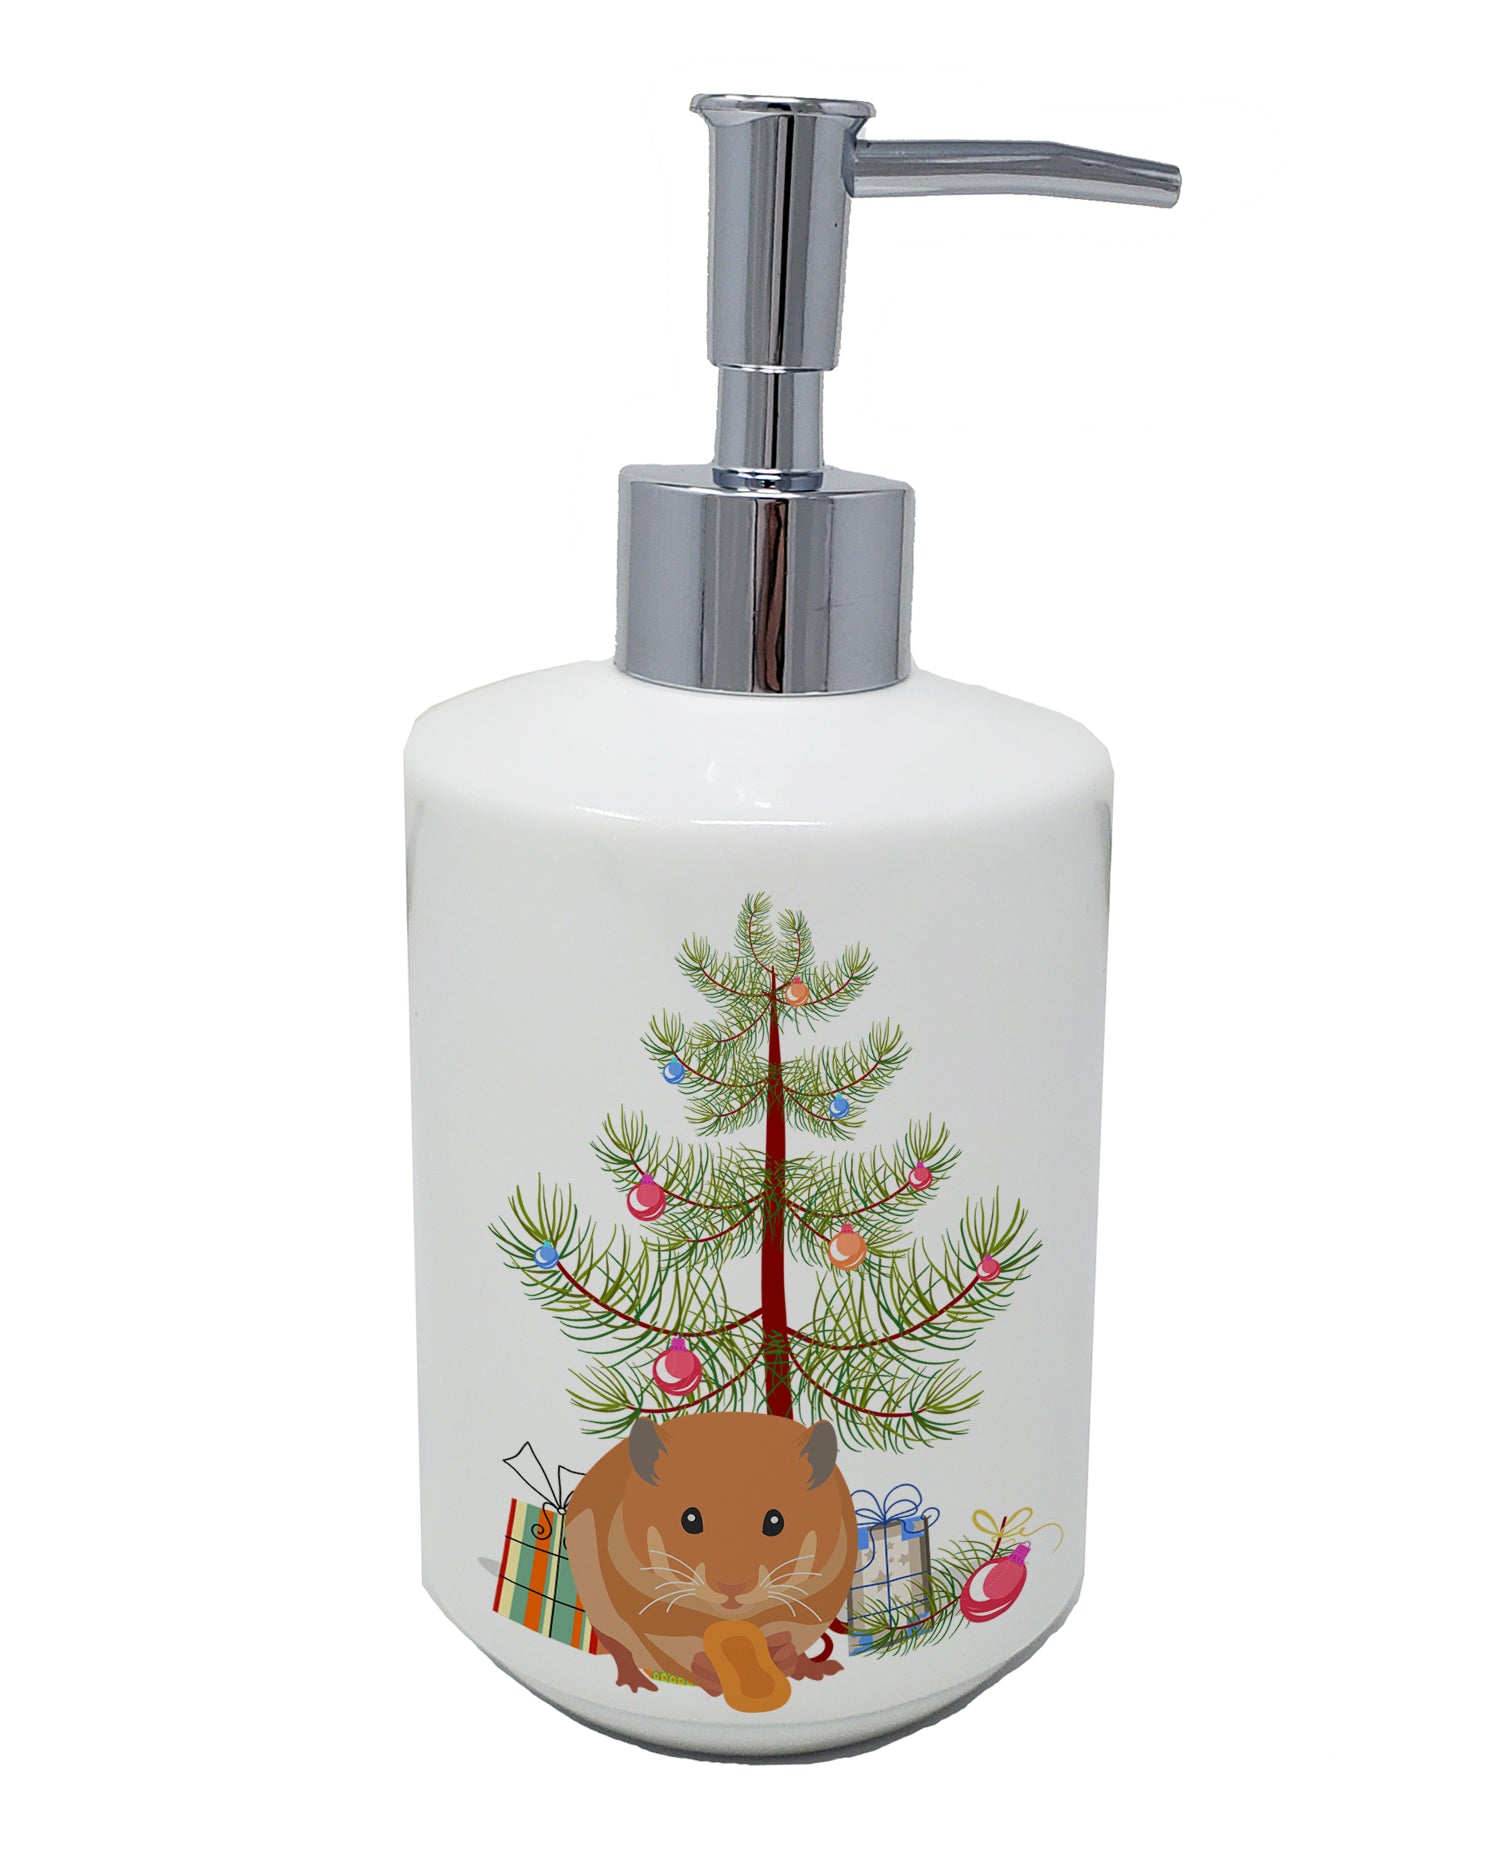 Buy this Teddy Bear Hamster Merry Christmas Ceramic Soap Dispenser